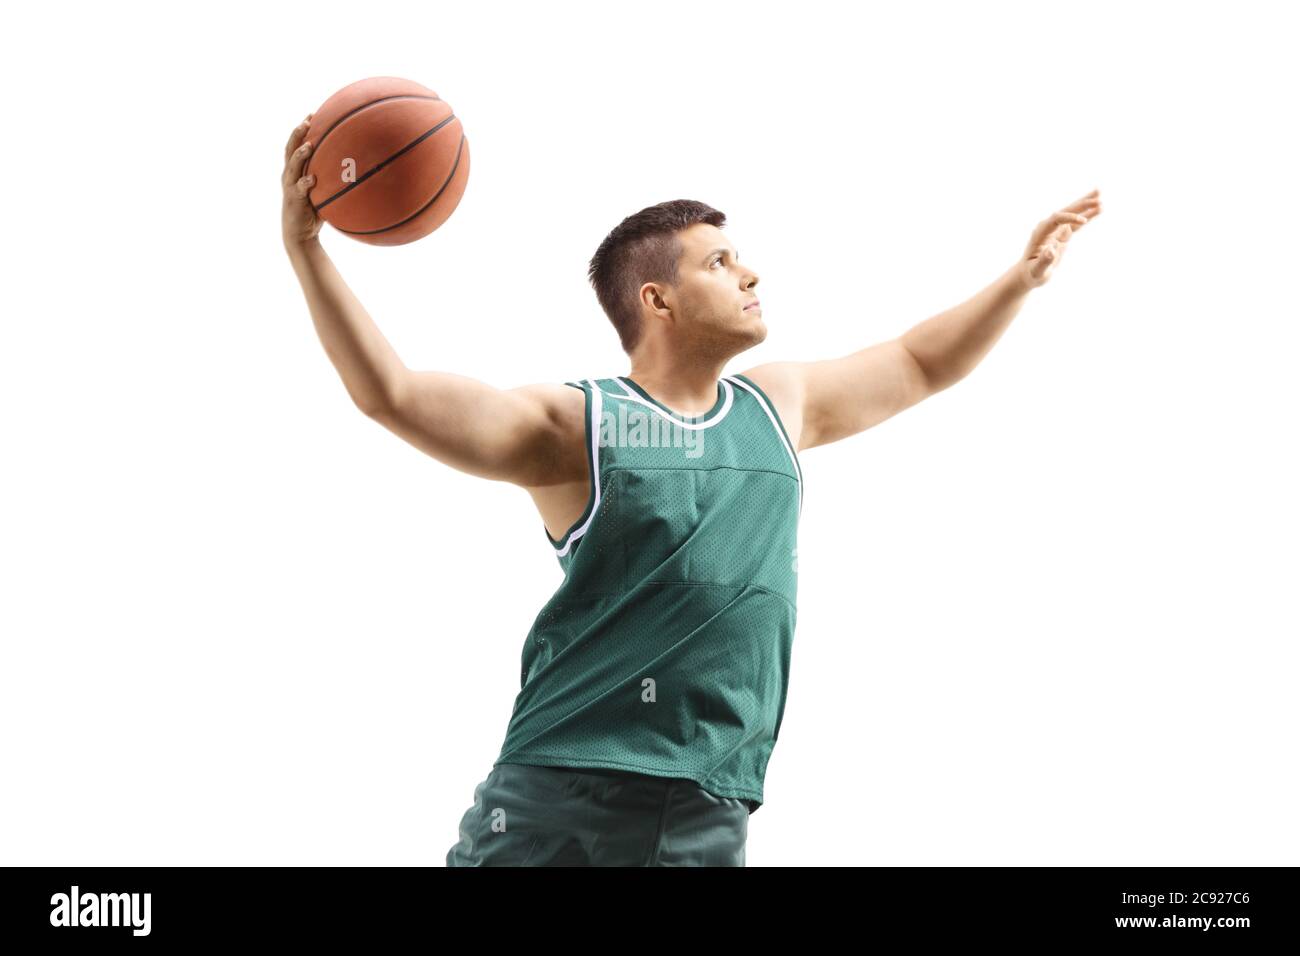 Un joueur de basket-ball masculin en action avec une balle qui exécute le dunk slam isolé sur fond blanc Banque D'Images